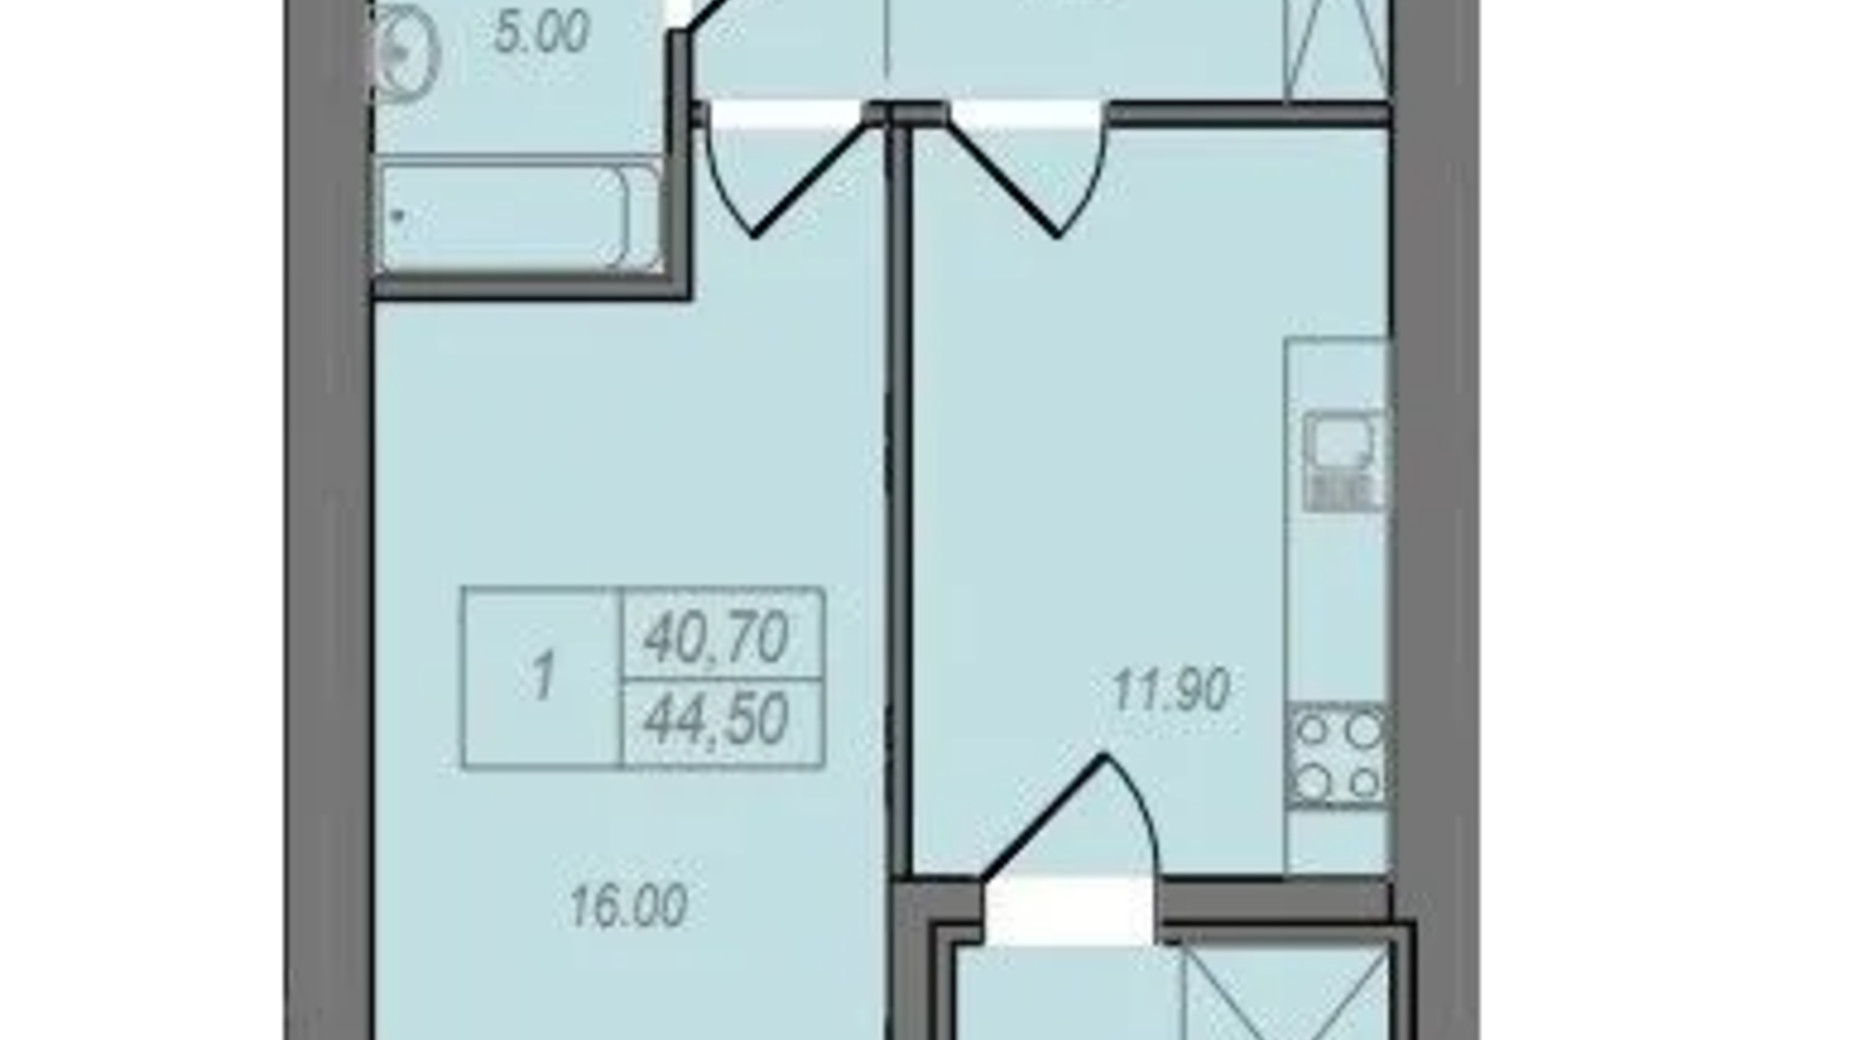 Планування 1-кімнатної квартири в ЖК Незалежність 44.5 м², фото 658280